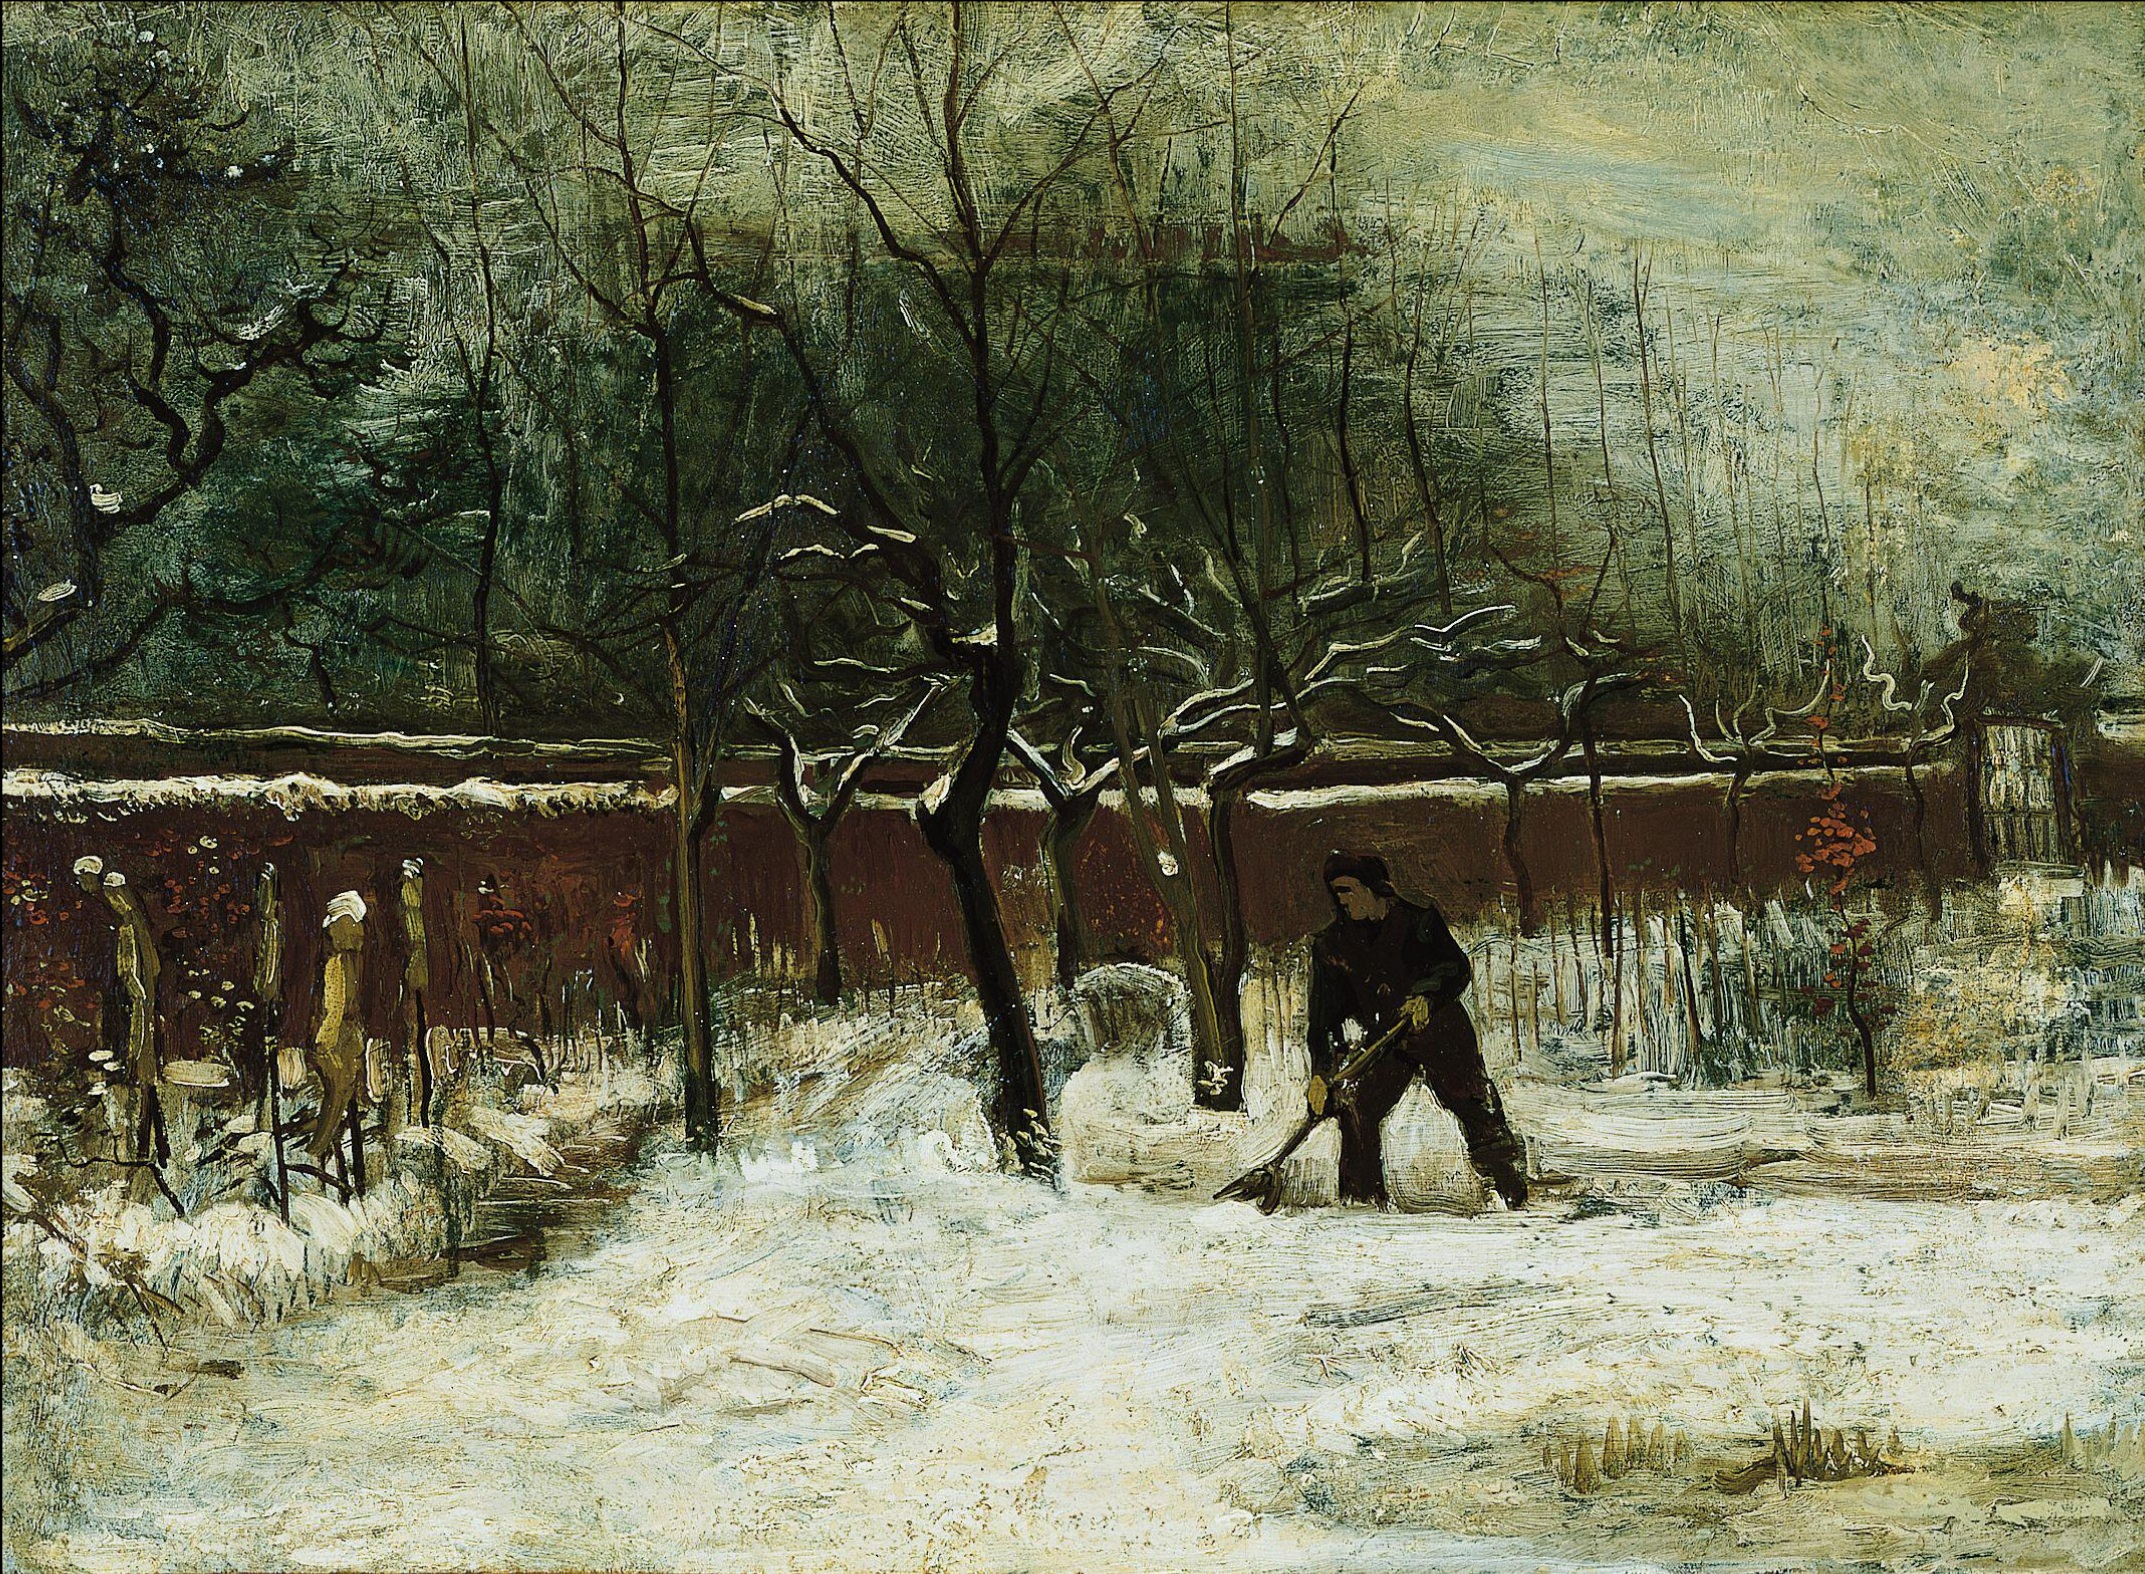 सर्दी by विन्सेंट वैन गो - जनवरी १८८५  - ५८.४ x ७९.१ सेमी  